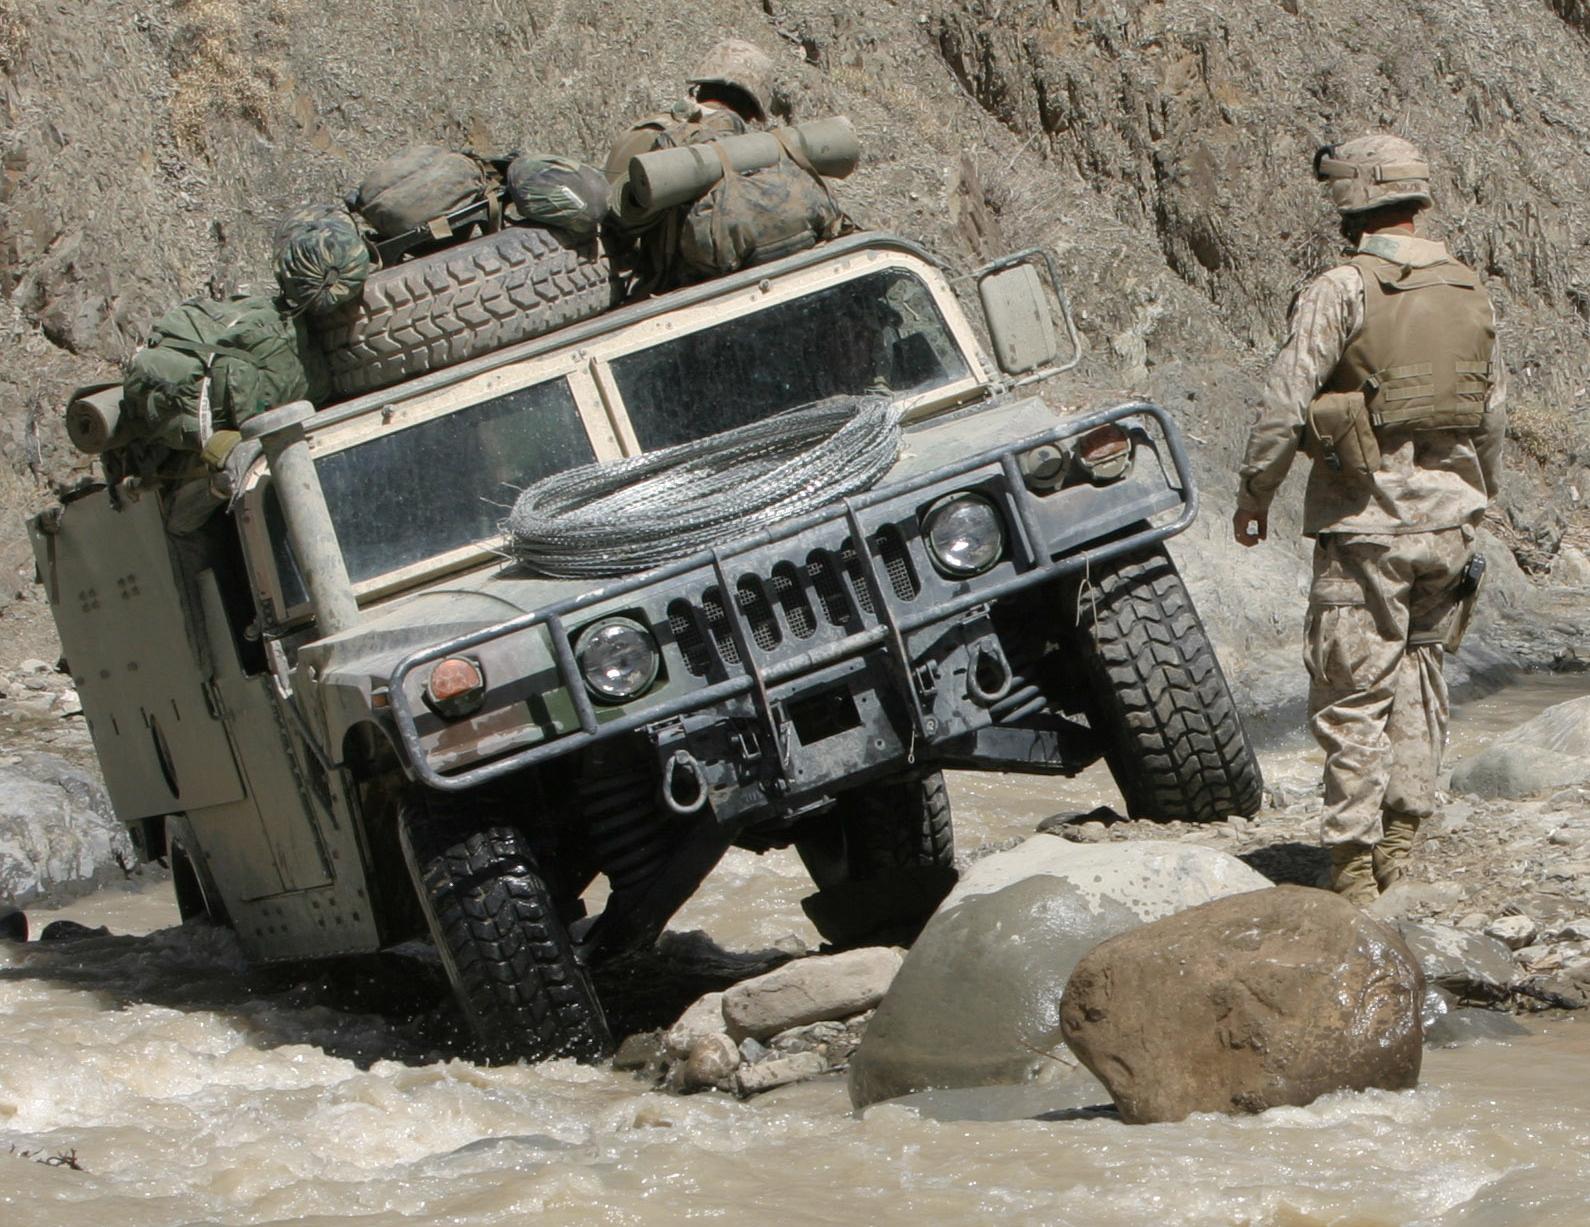 Humvee_in_difficult_terrain.jpg